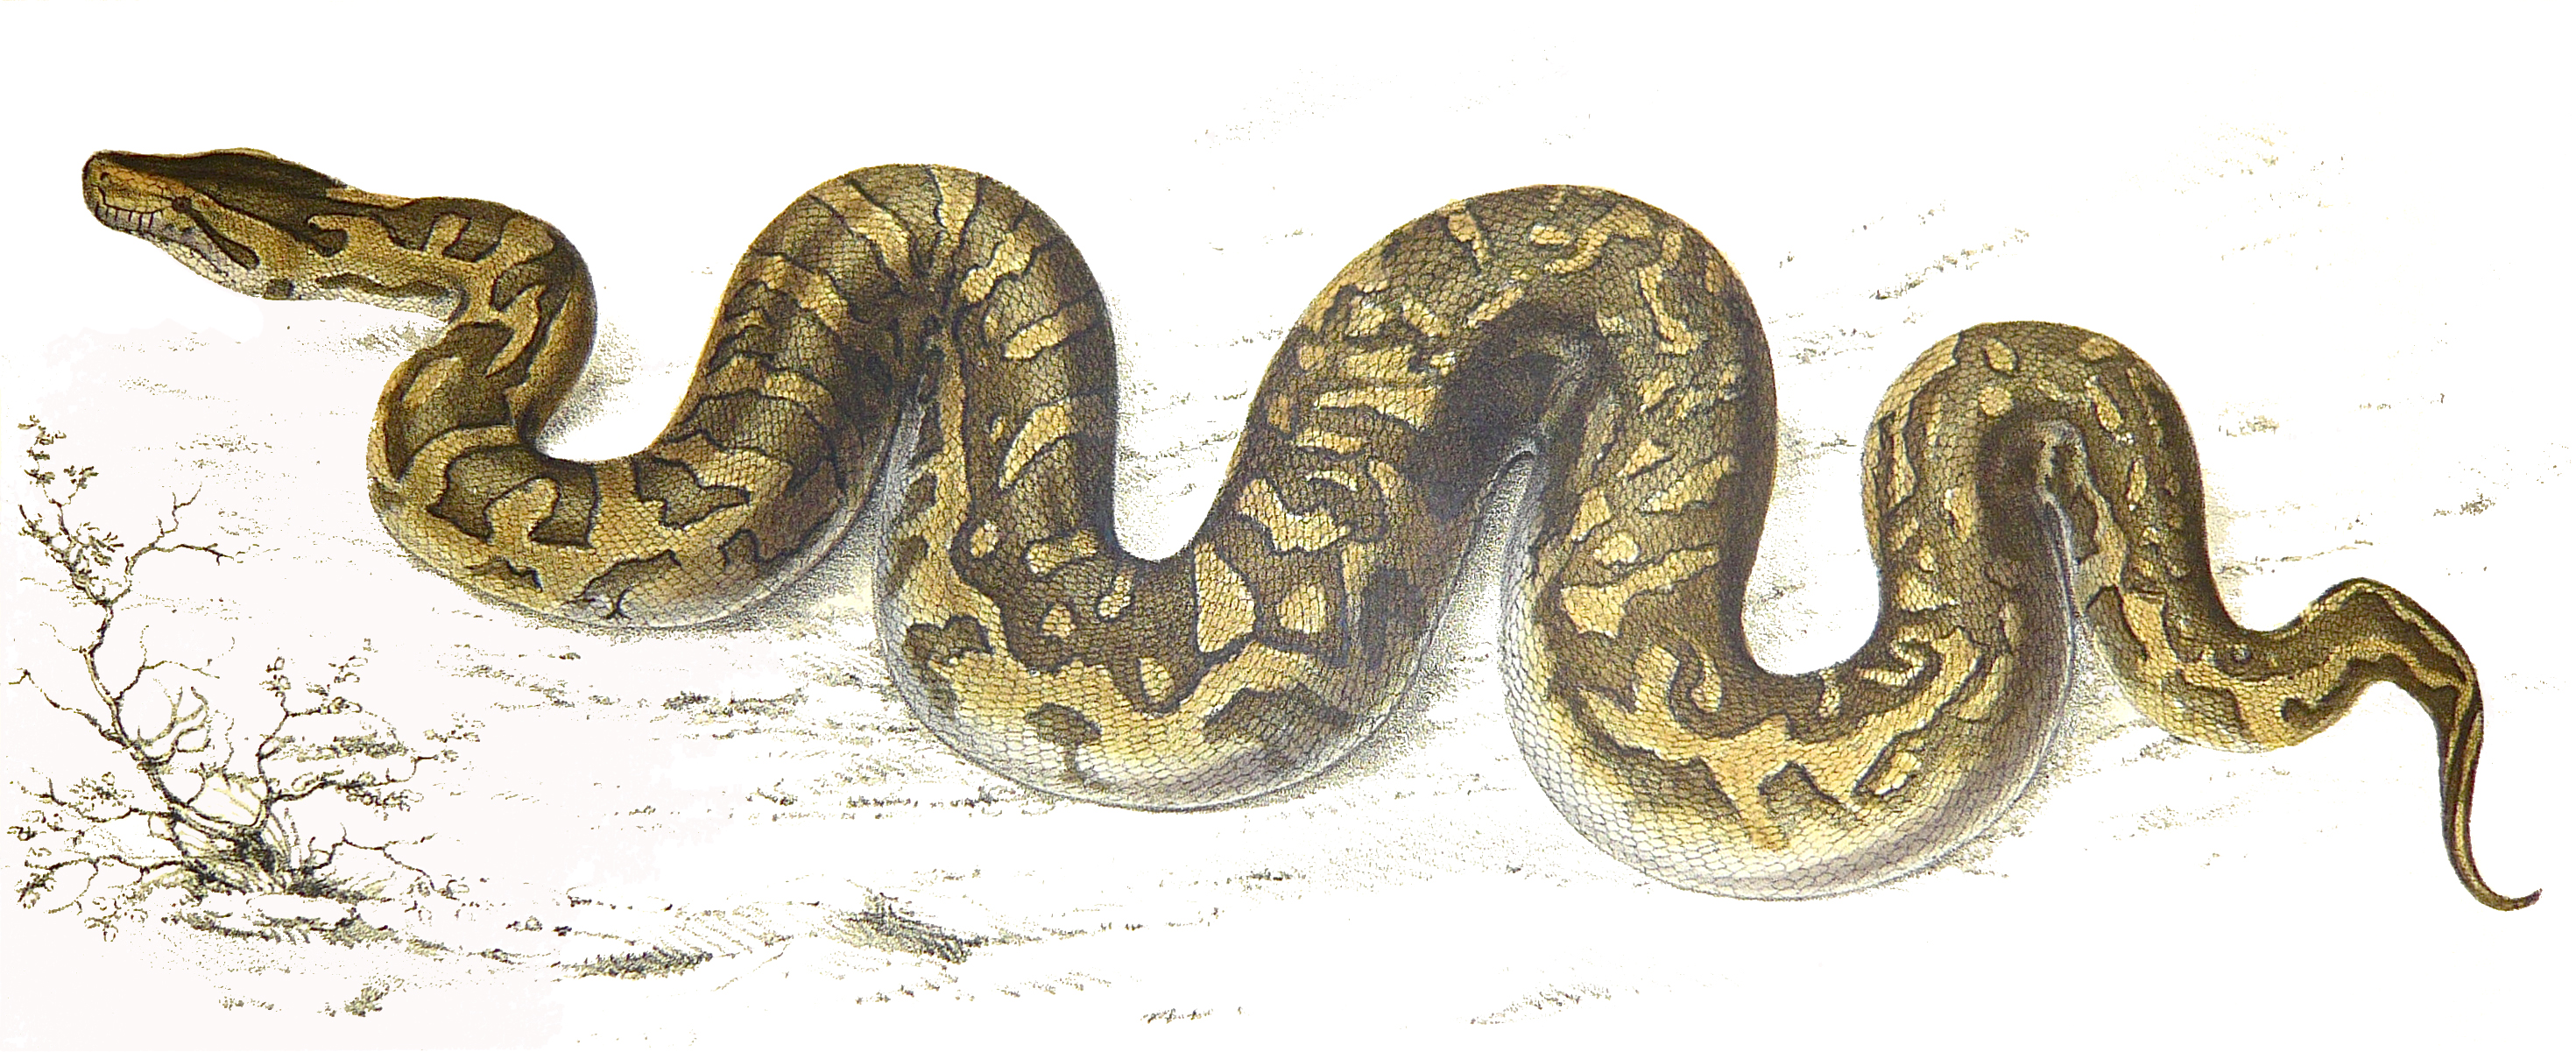 Anaconda Snake Drawing at GetDrawings Free download